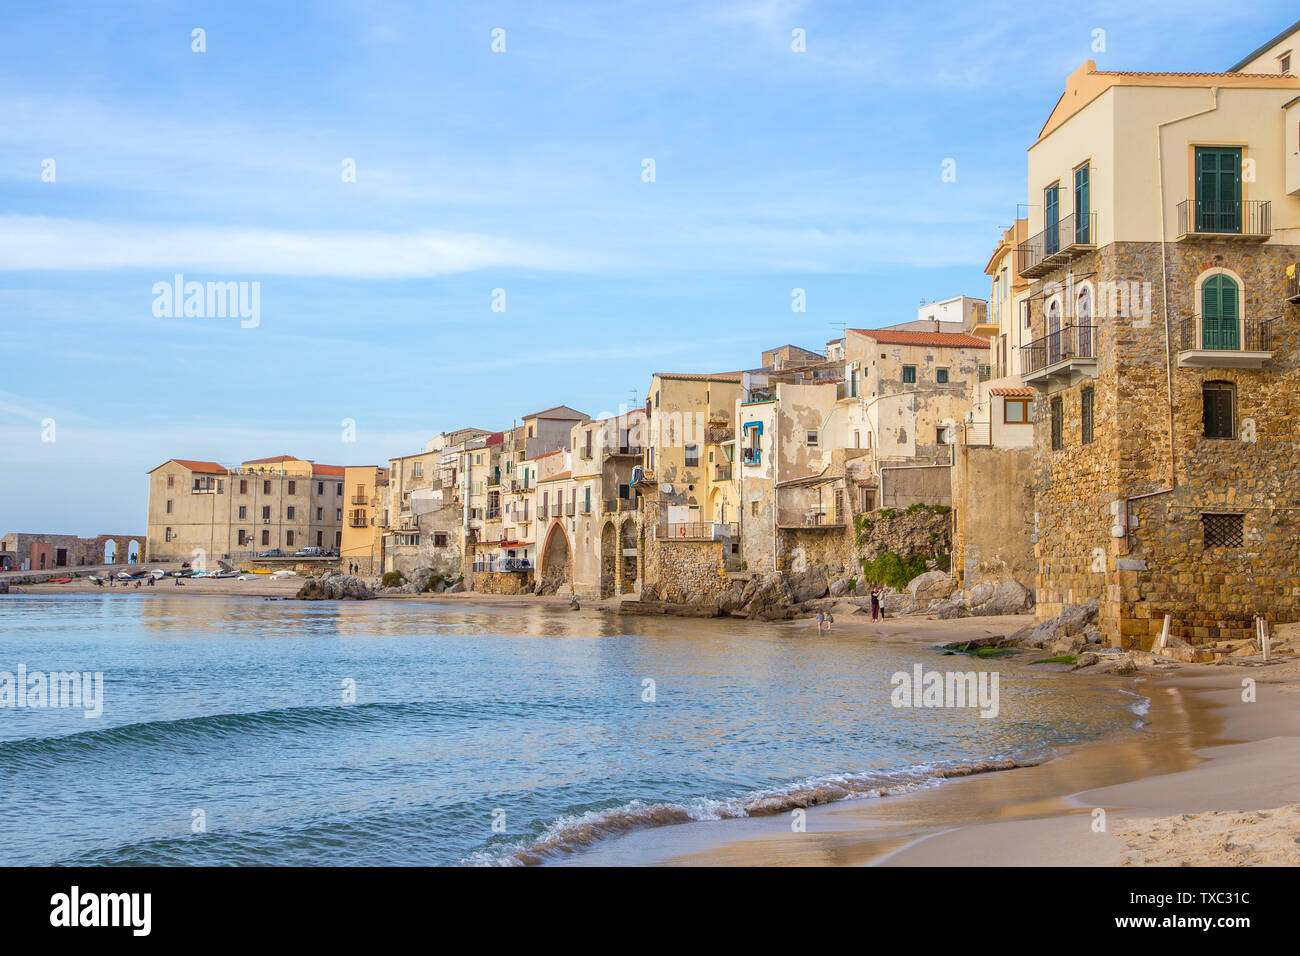 Céfalu, Sicilia, Italia - 16 Marzo 2018: una rilassante giornata di sole sulla spiaggia di Céfalu, con poche persone irriconoscibili e vecchi edifici tipici Foto Stock